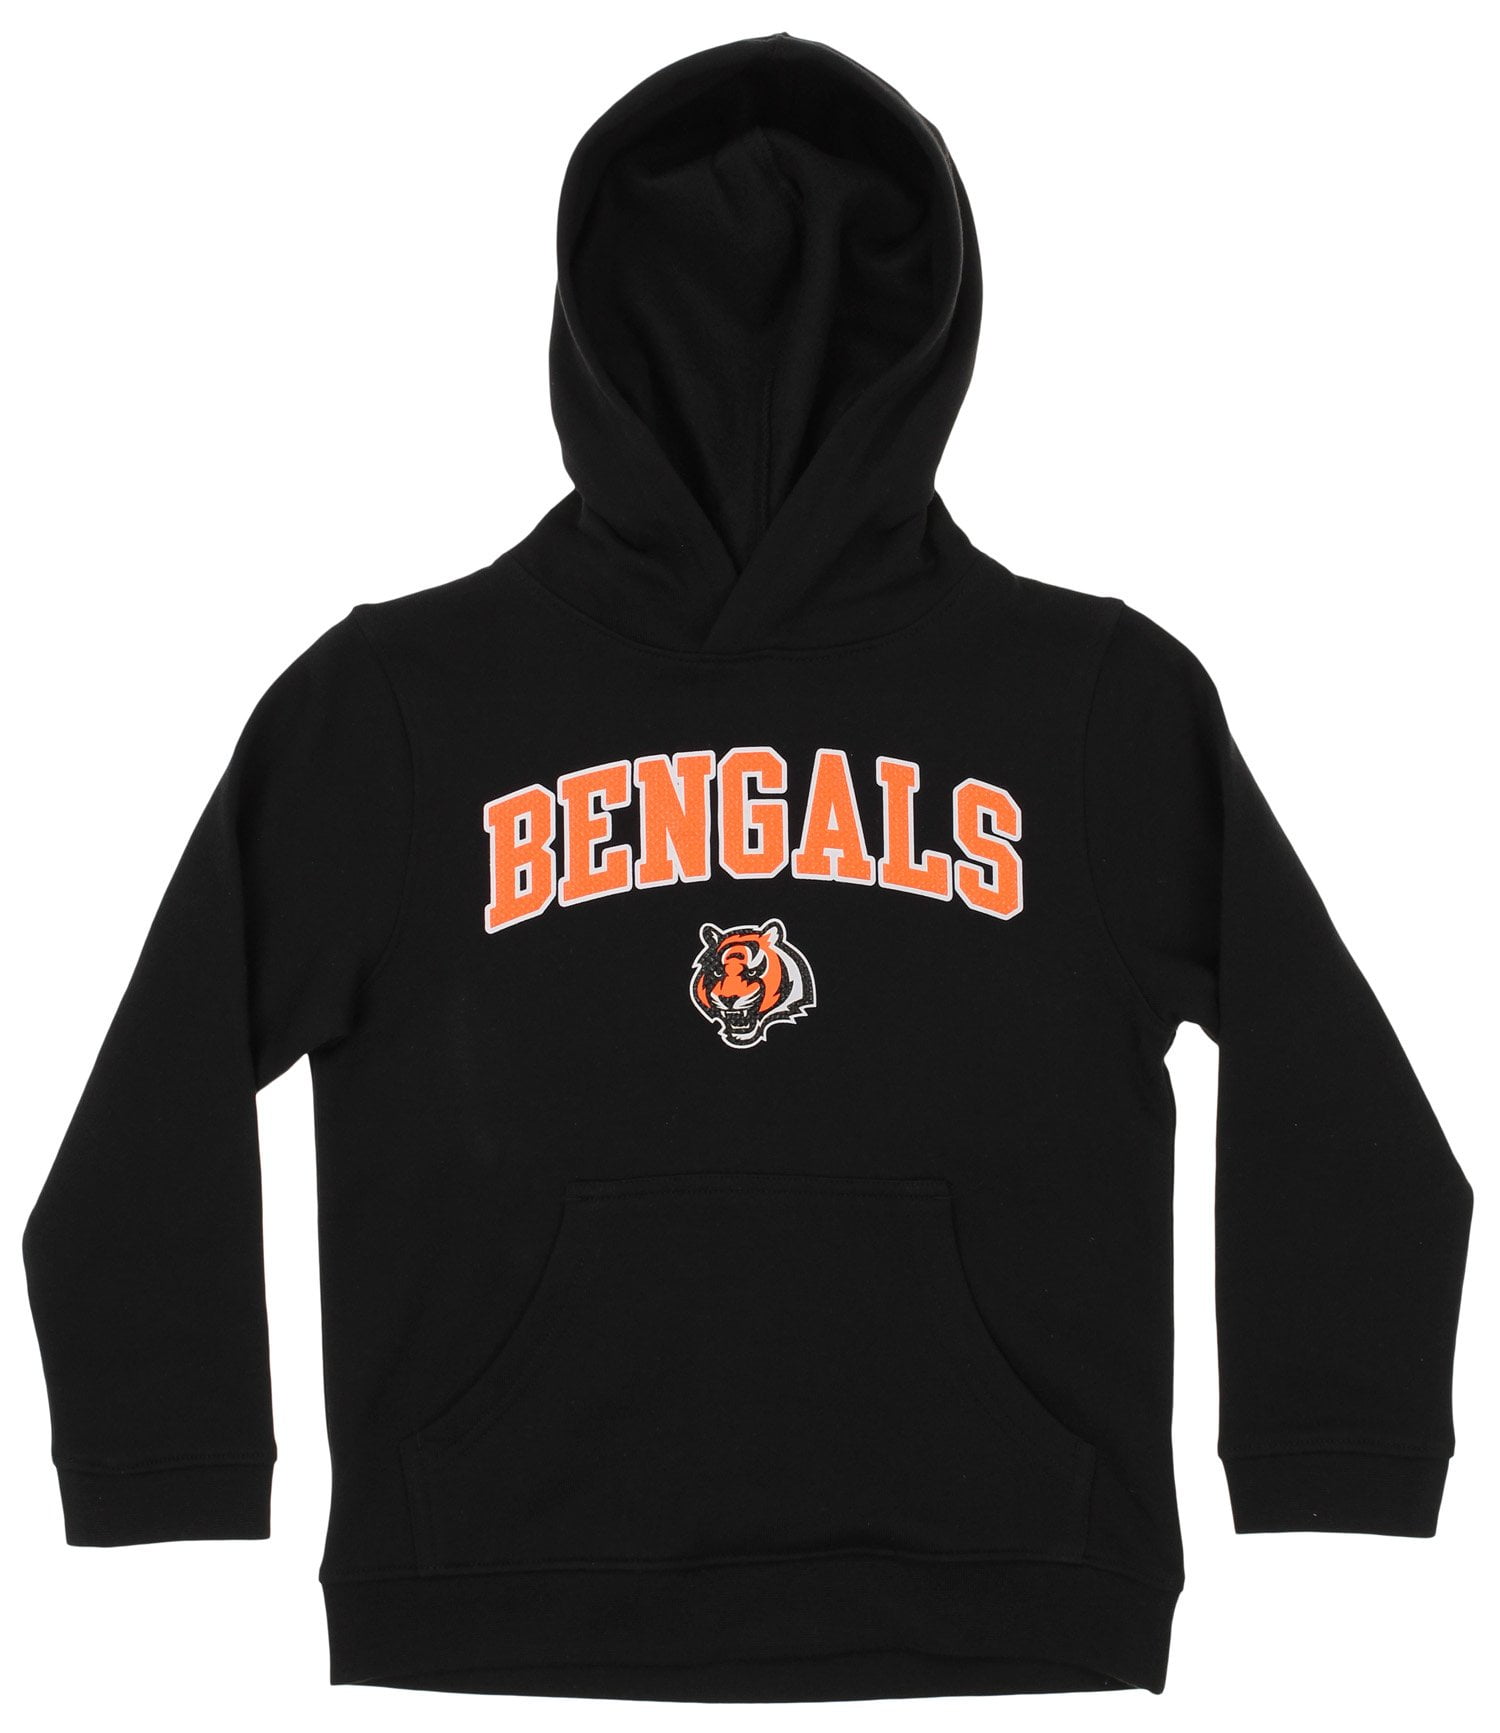 boys bengals hoodie